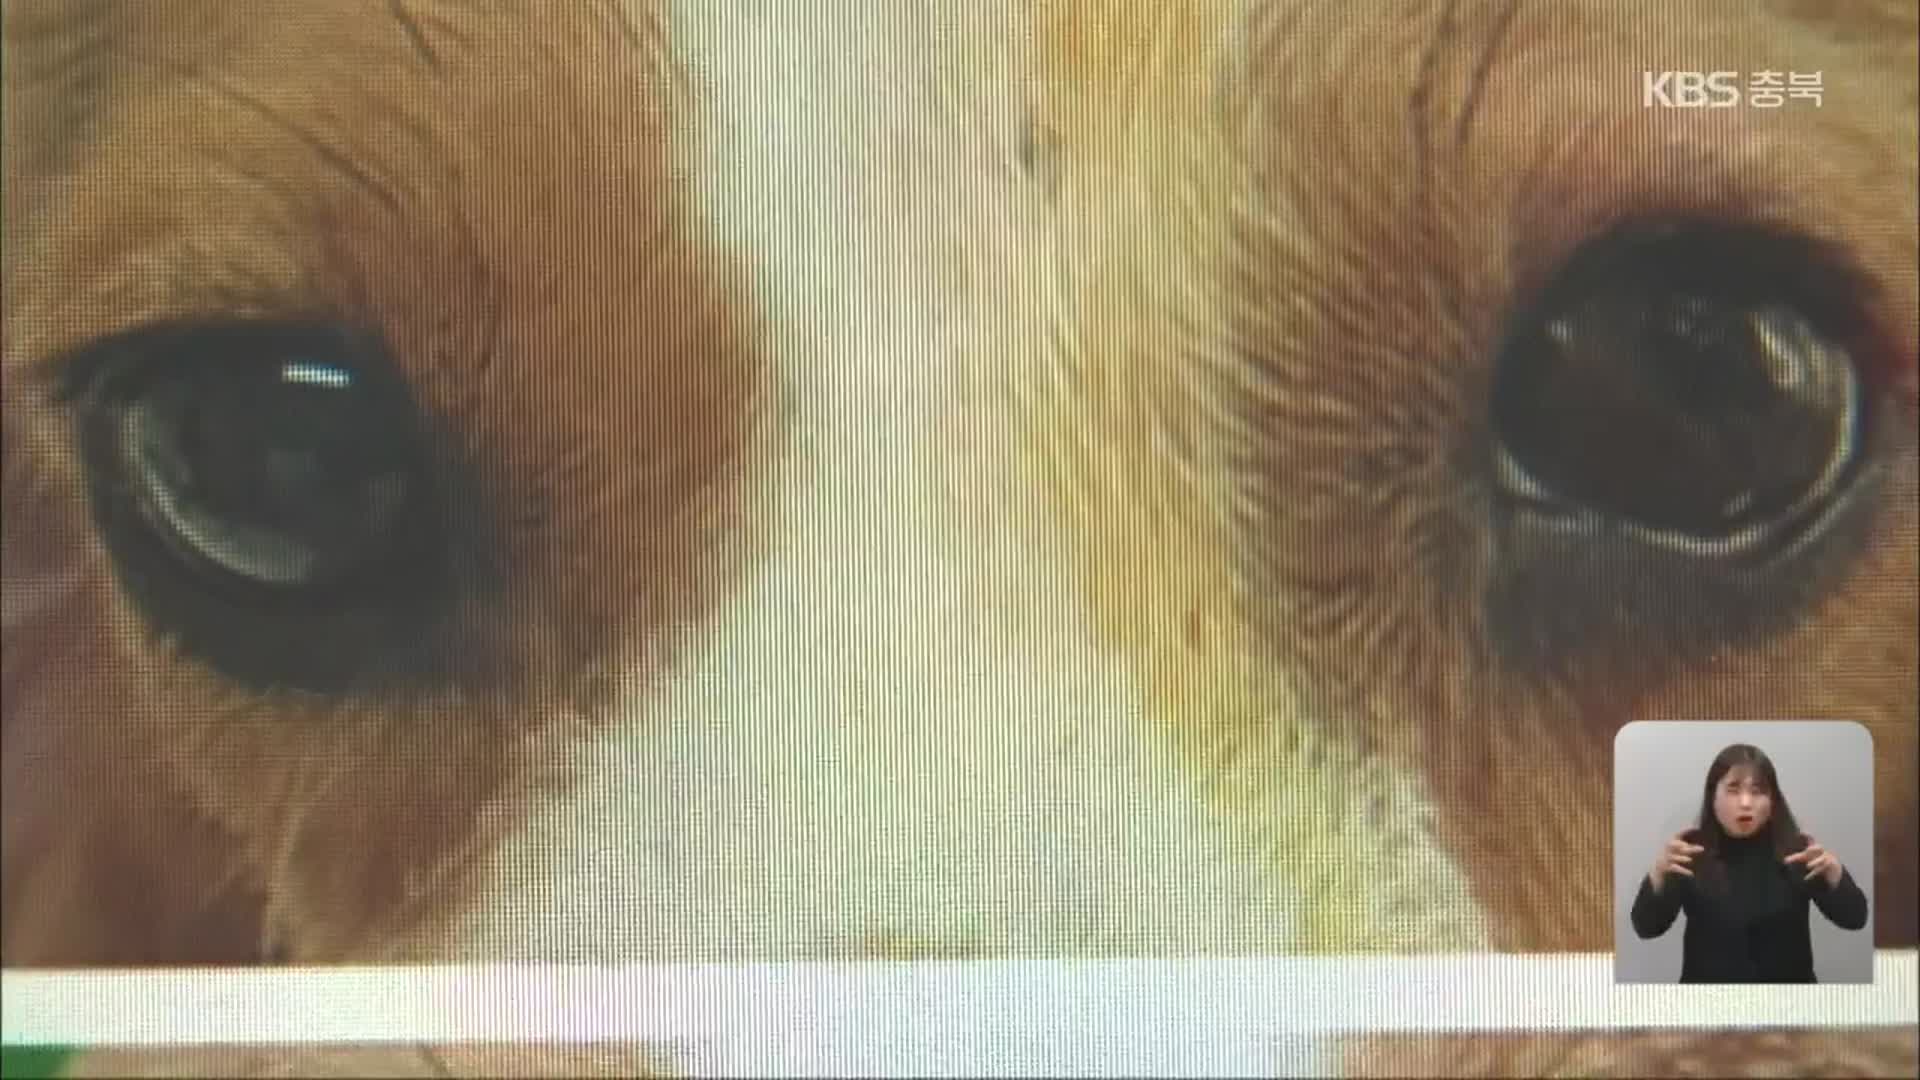 개 눈 적출 논란…“동물 학대” vs “실험 기준 준수”